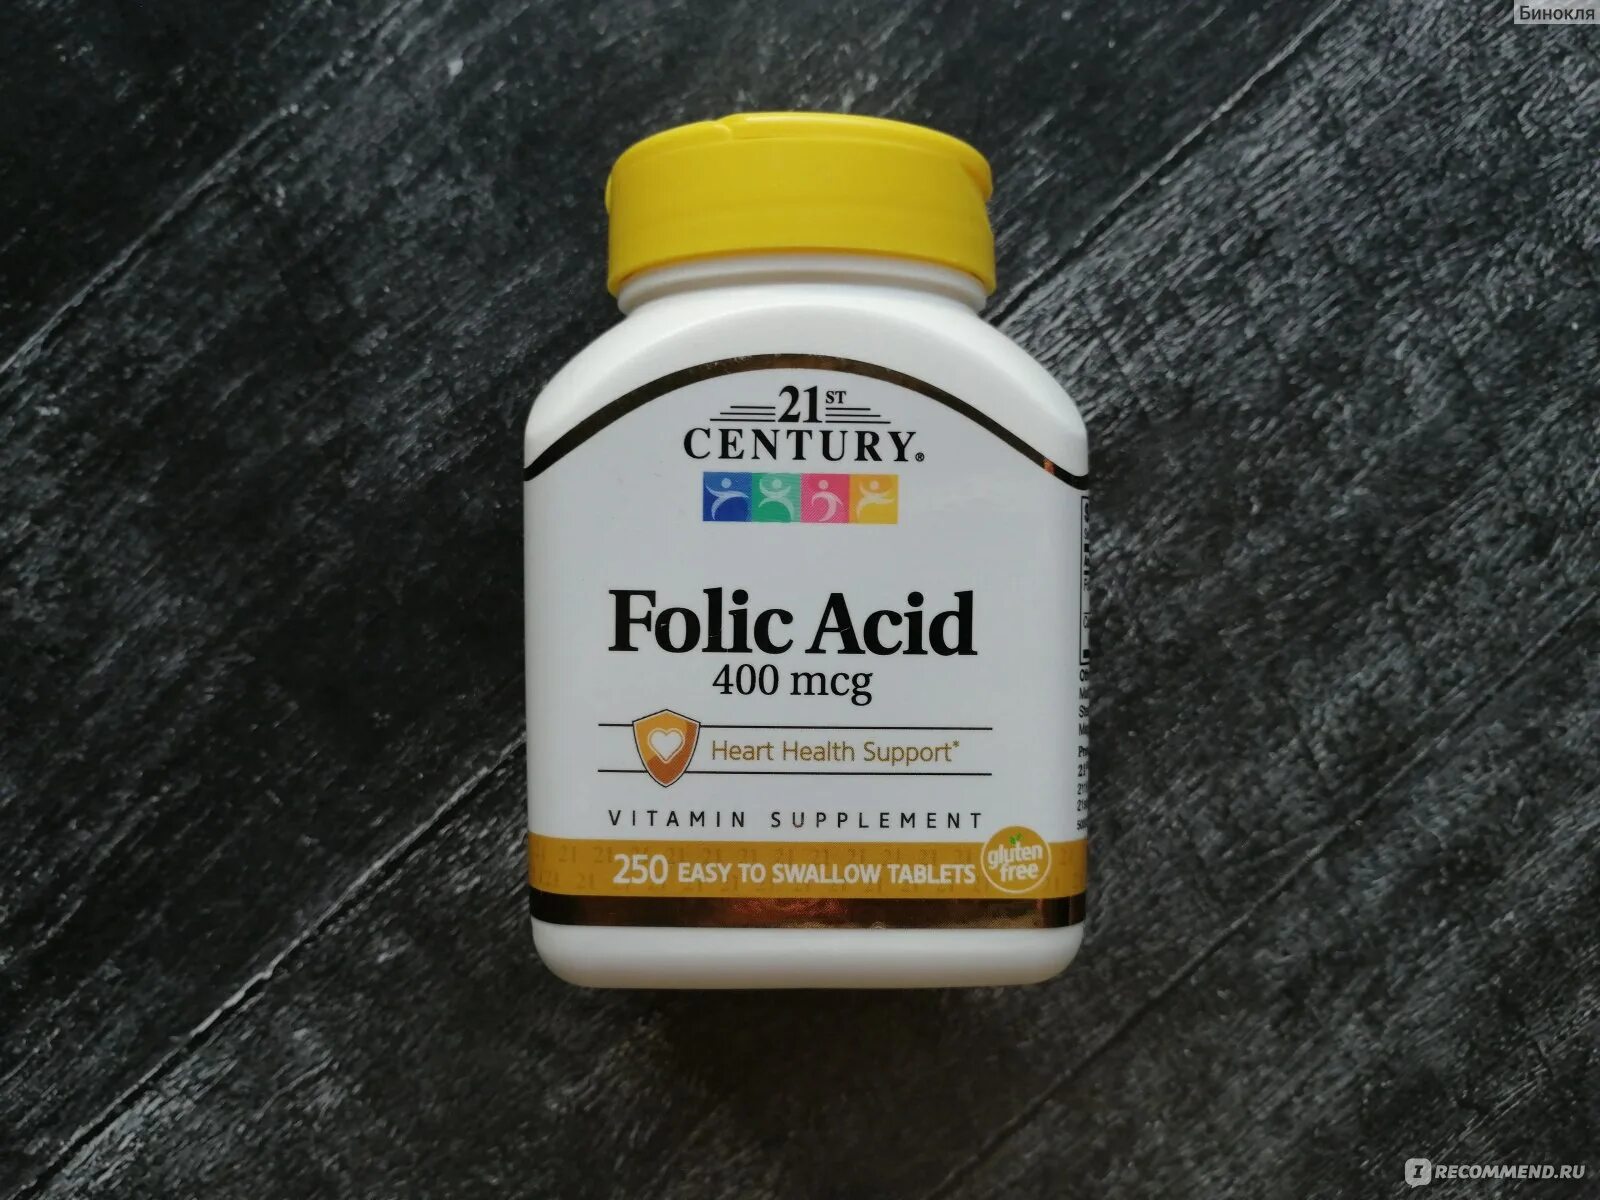 Folic acid 400 MCG. Folic acid 21 Century. Folic acid 400 MCG 21. Фолиевая кислота 400 айхерб 21.